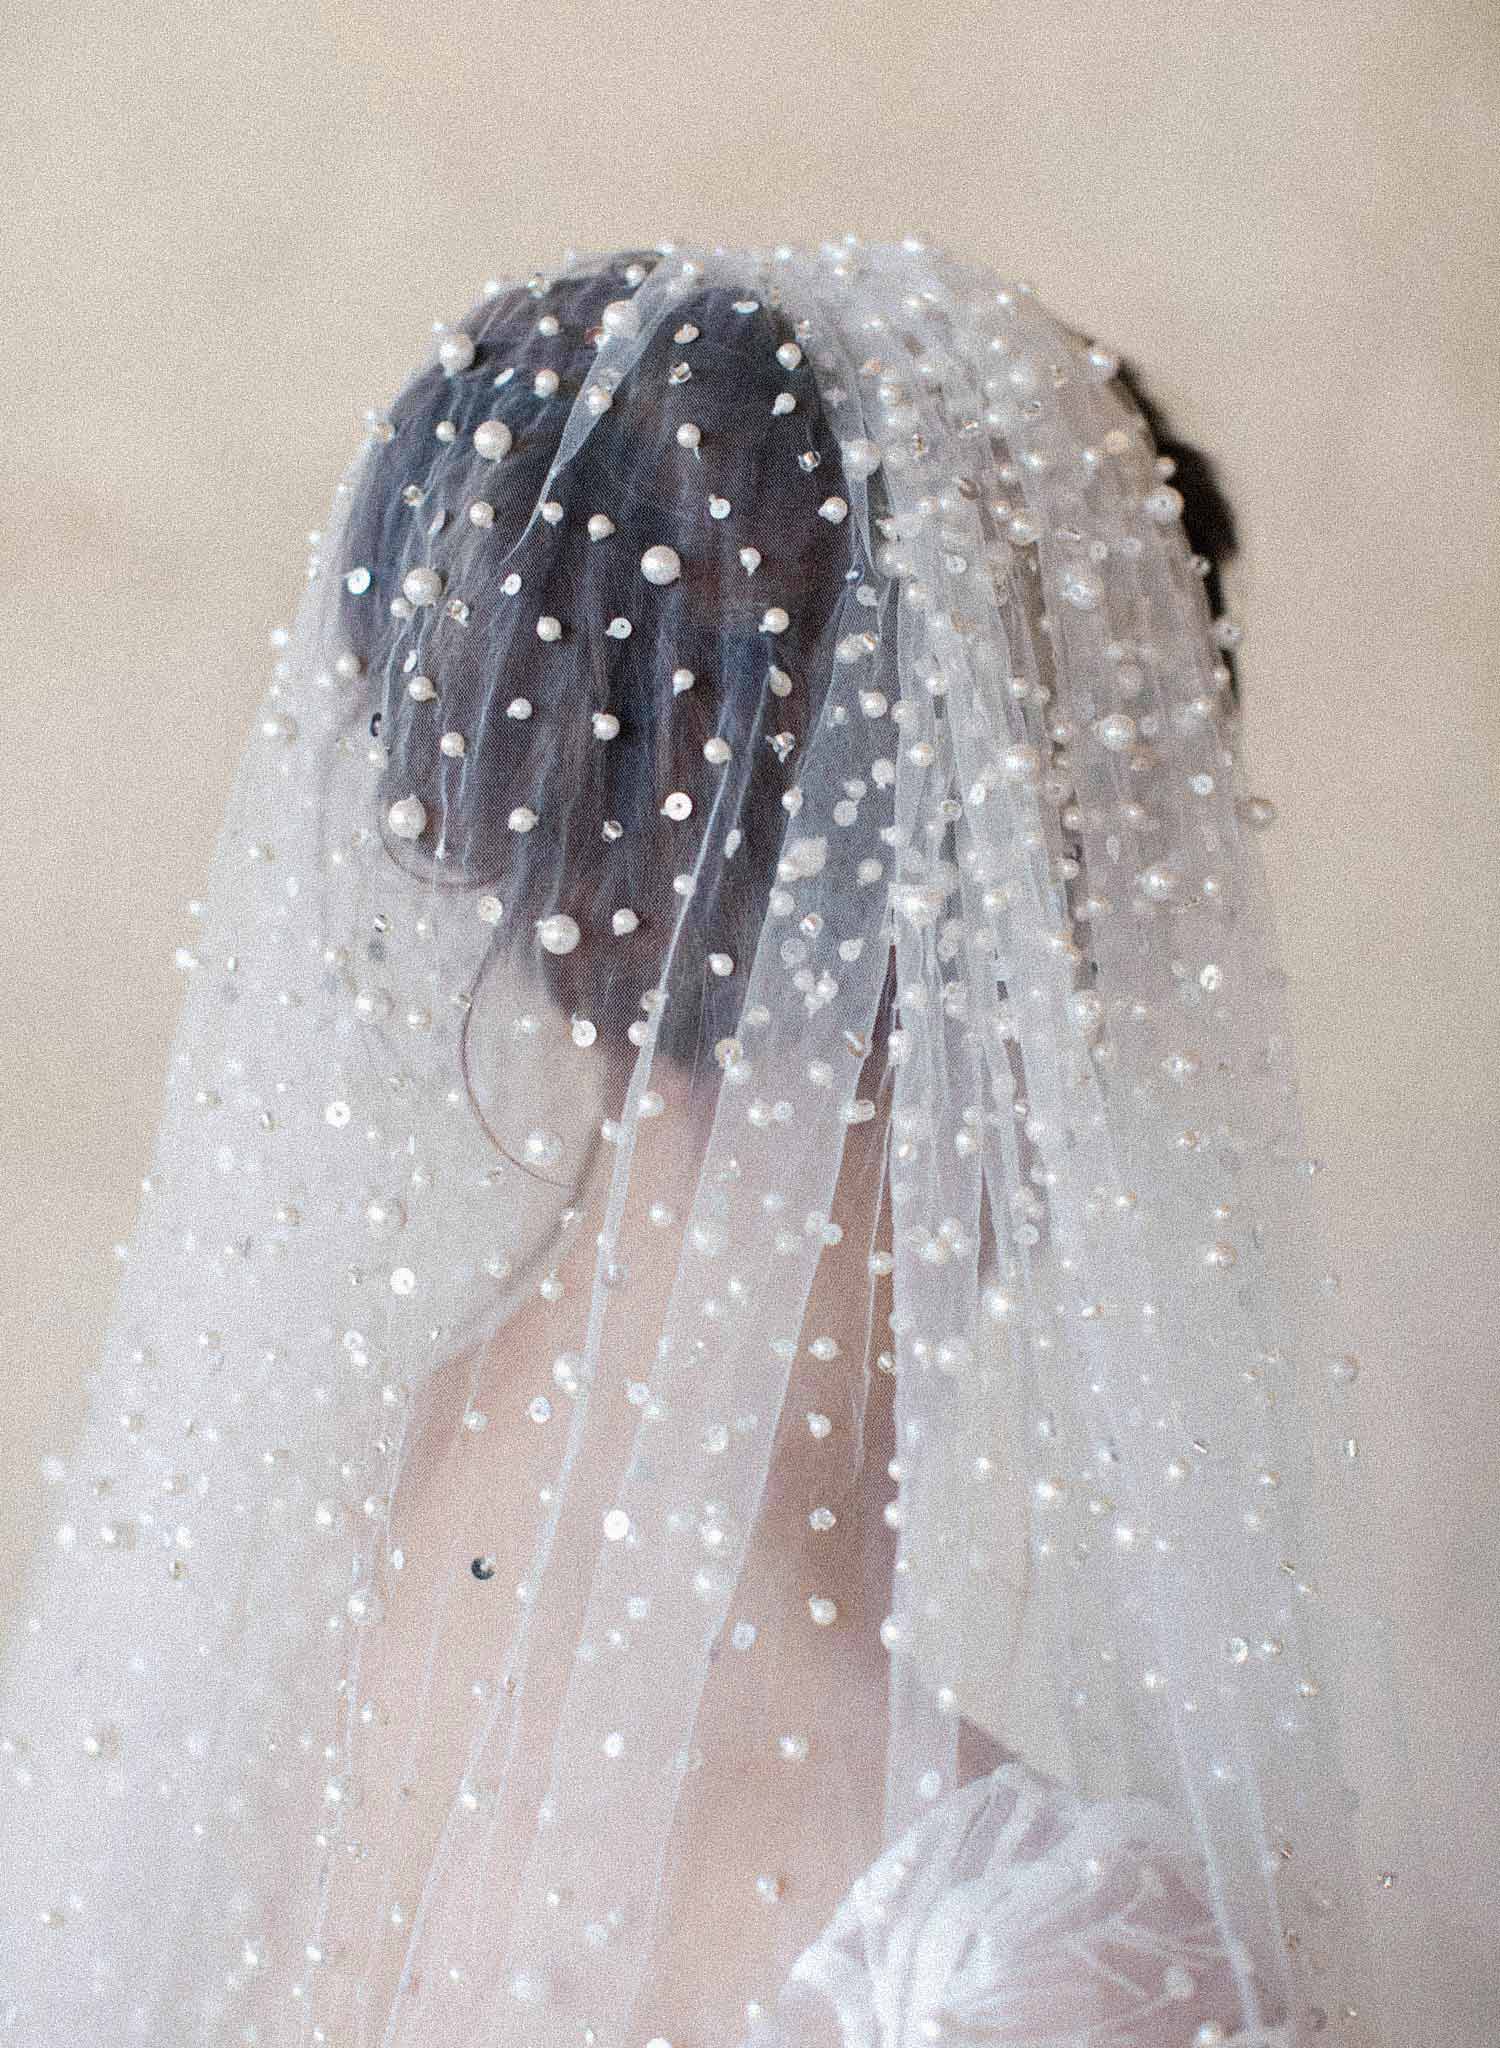 Twigs & Honey Sheer Tulle Bridal Wedding Veil - Gossamer Tulle Fantasy Veil - Style #2003 Gossamer / Off White / Fingertip